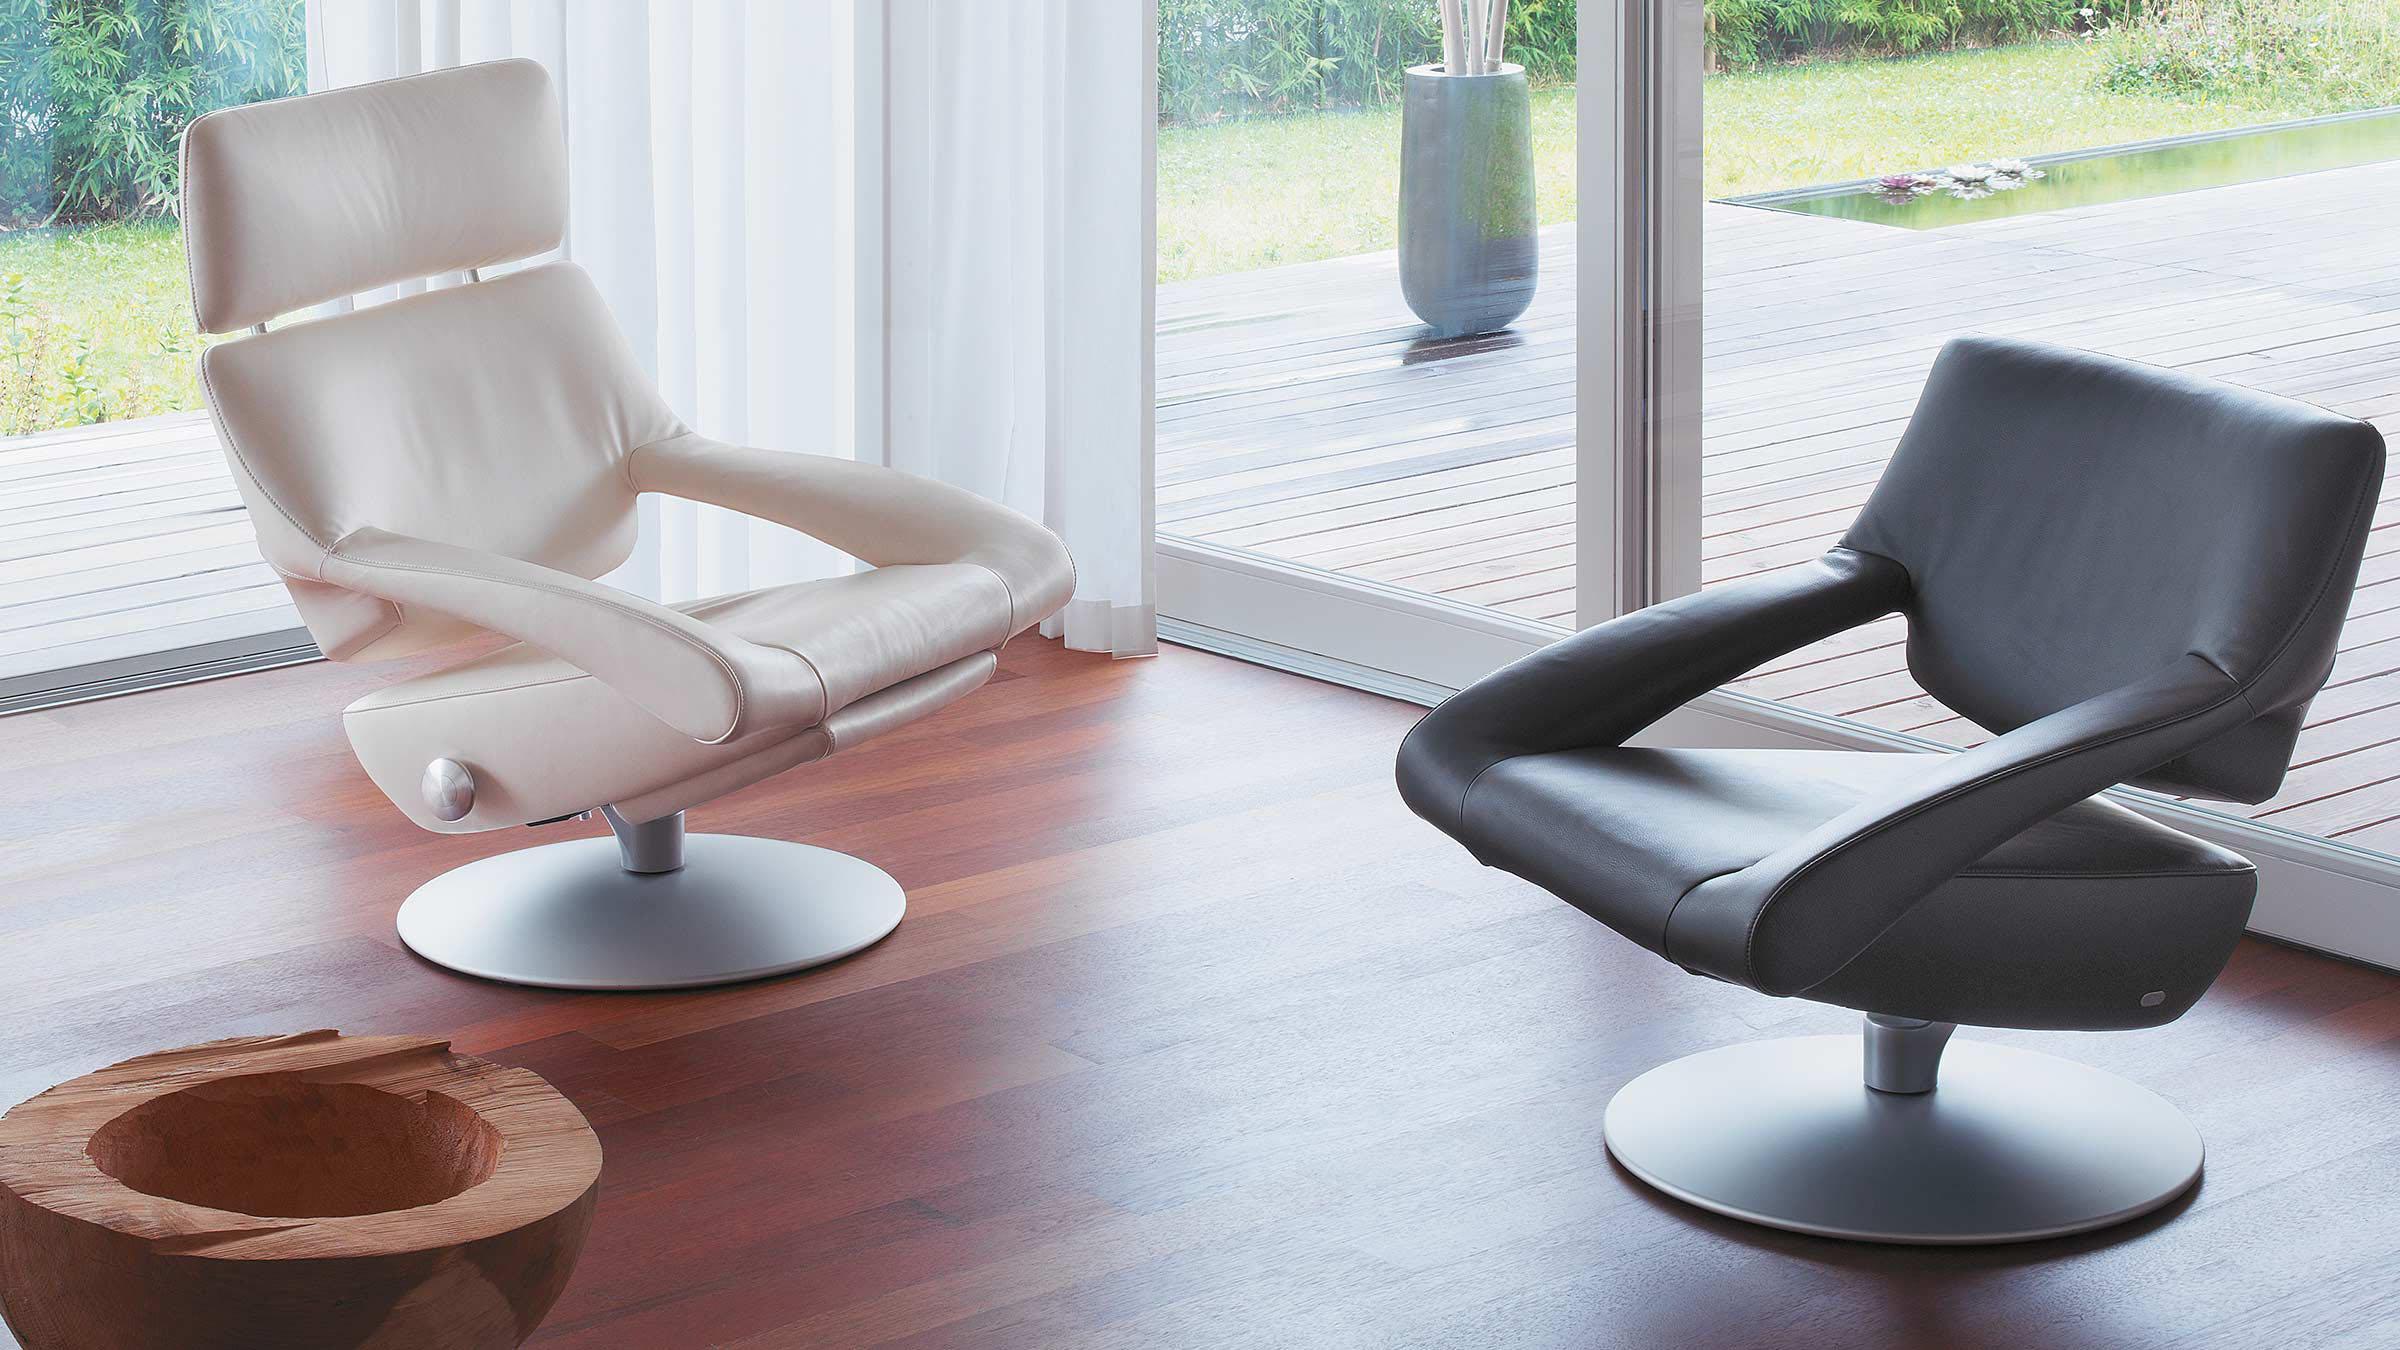 Der Stuhl ist das moderne Einrichtungsobjekt, das die Designer am meisten beschäftigt hat. Kein anderes Möbelstück wurde so sorgfältig getestet, studiert und auf seine Zusammensetzung, seinen Komfort und seine Funktion, sein Herz und seine Lunge hin